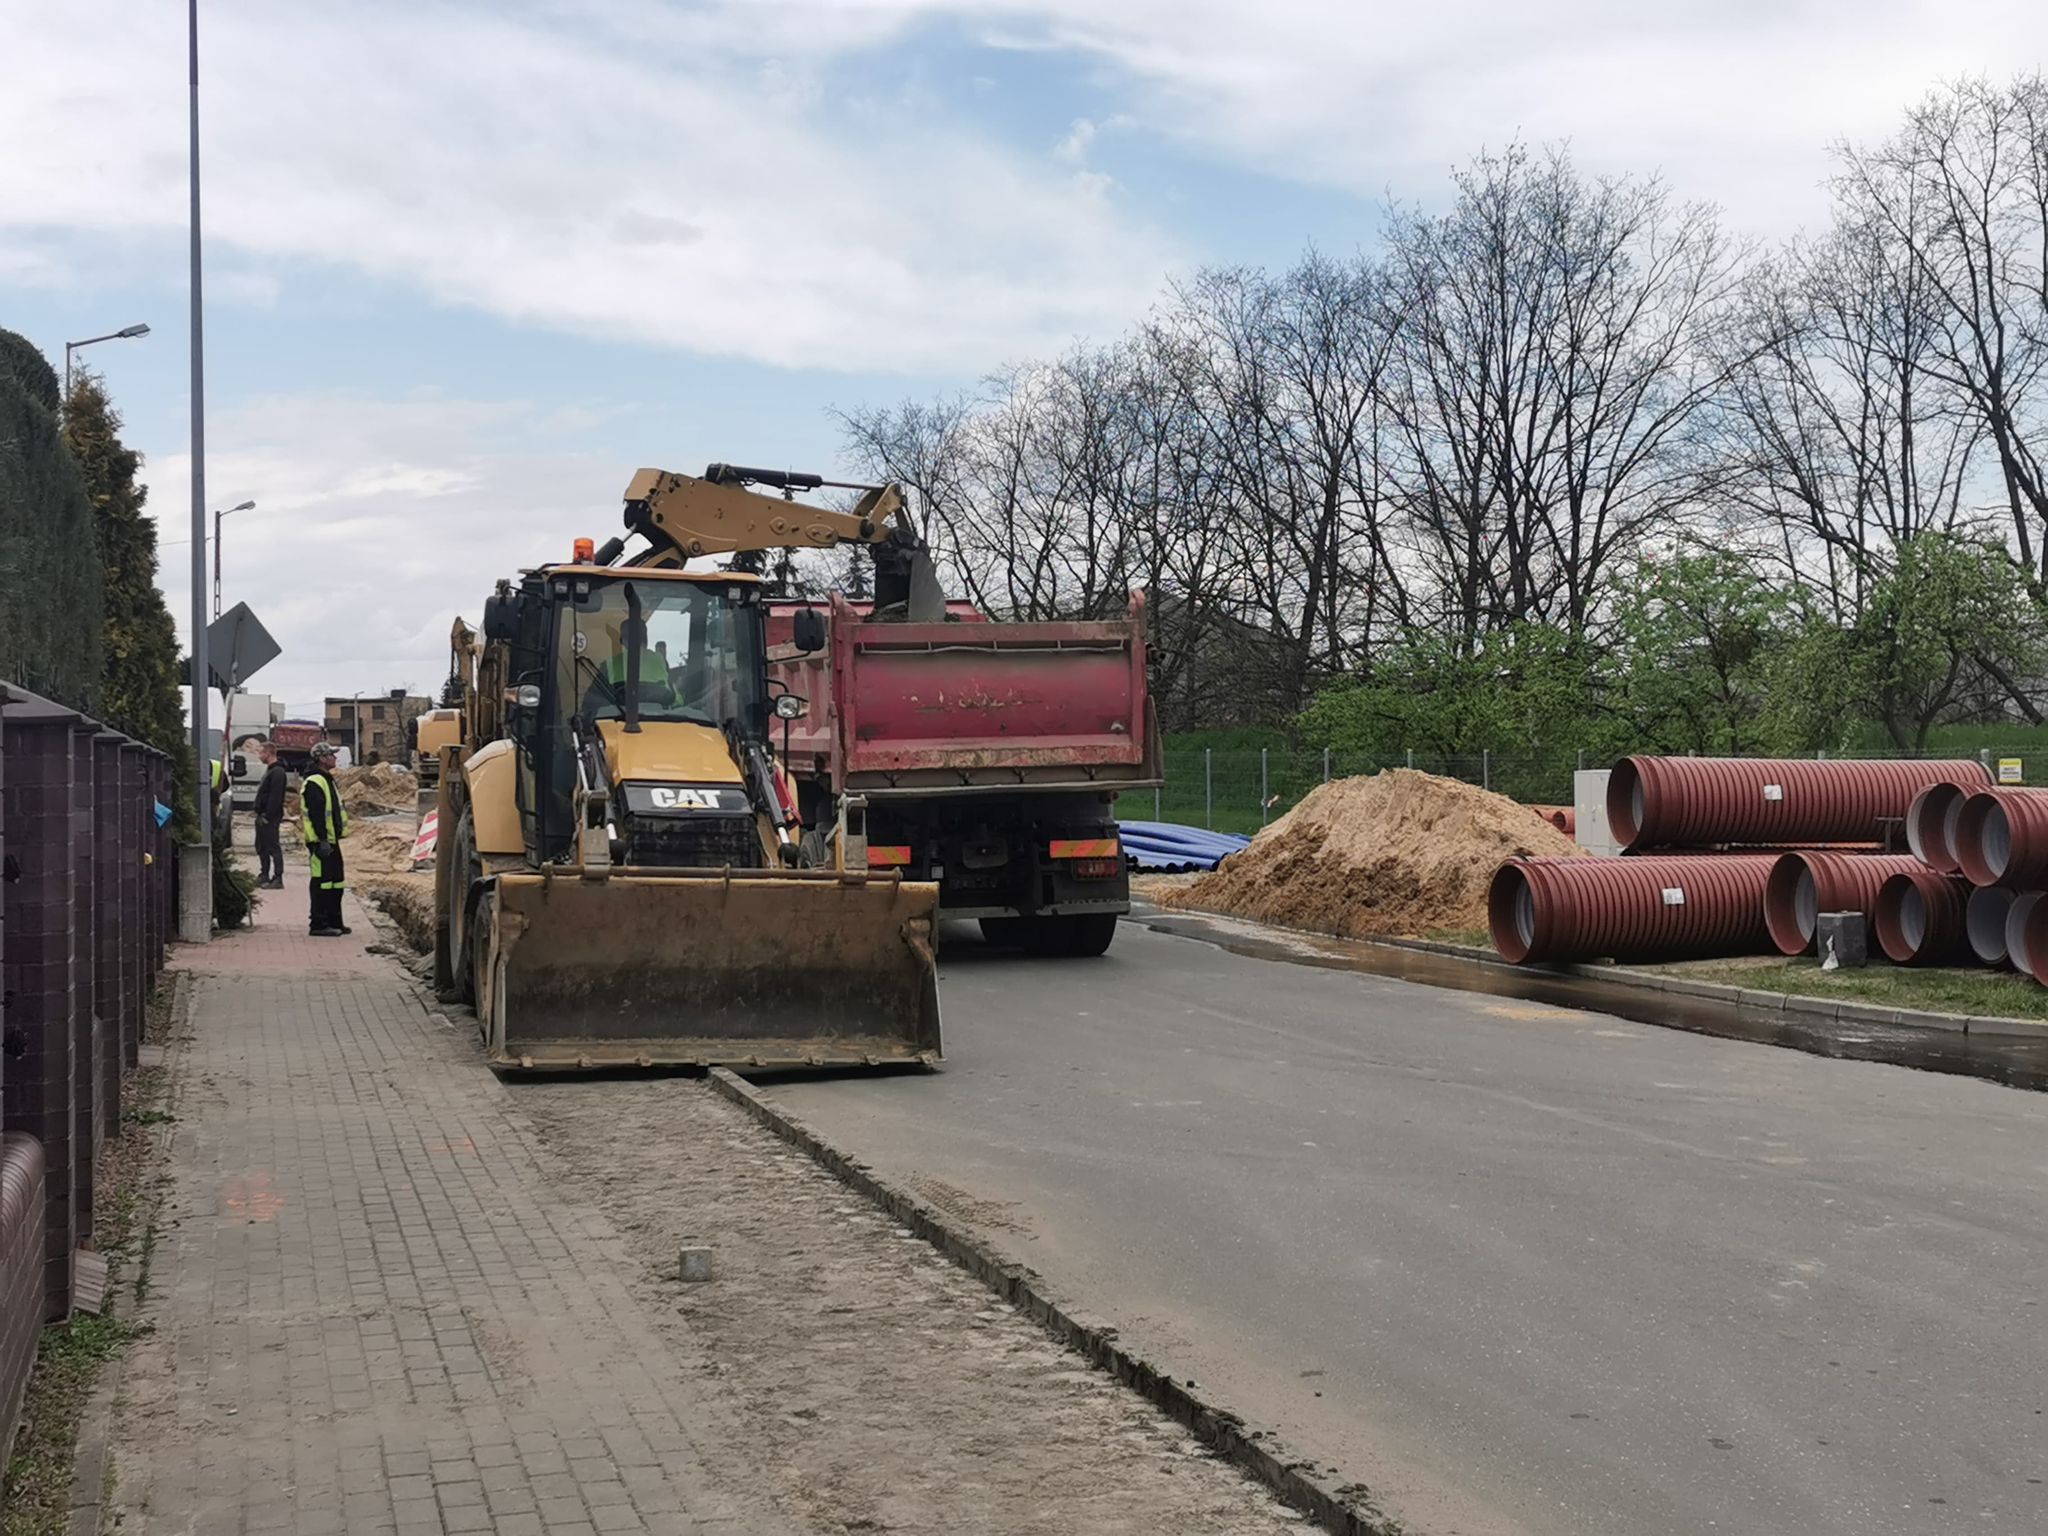 Zdjęcie przedsatwia drogę, na której znajduje się sprzęt budowlany(ciężarówka i koparka), obok leżą rury do wodociągu, stoją robotnicy